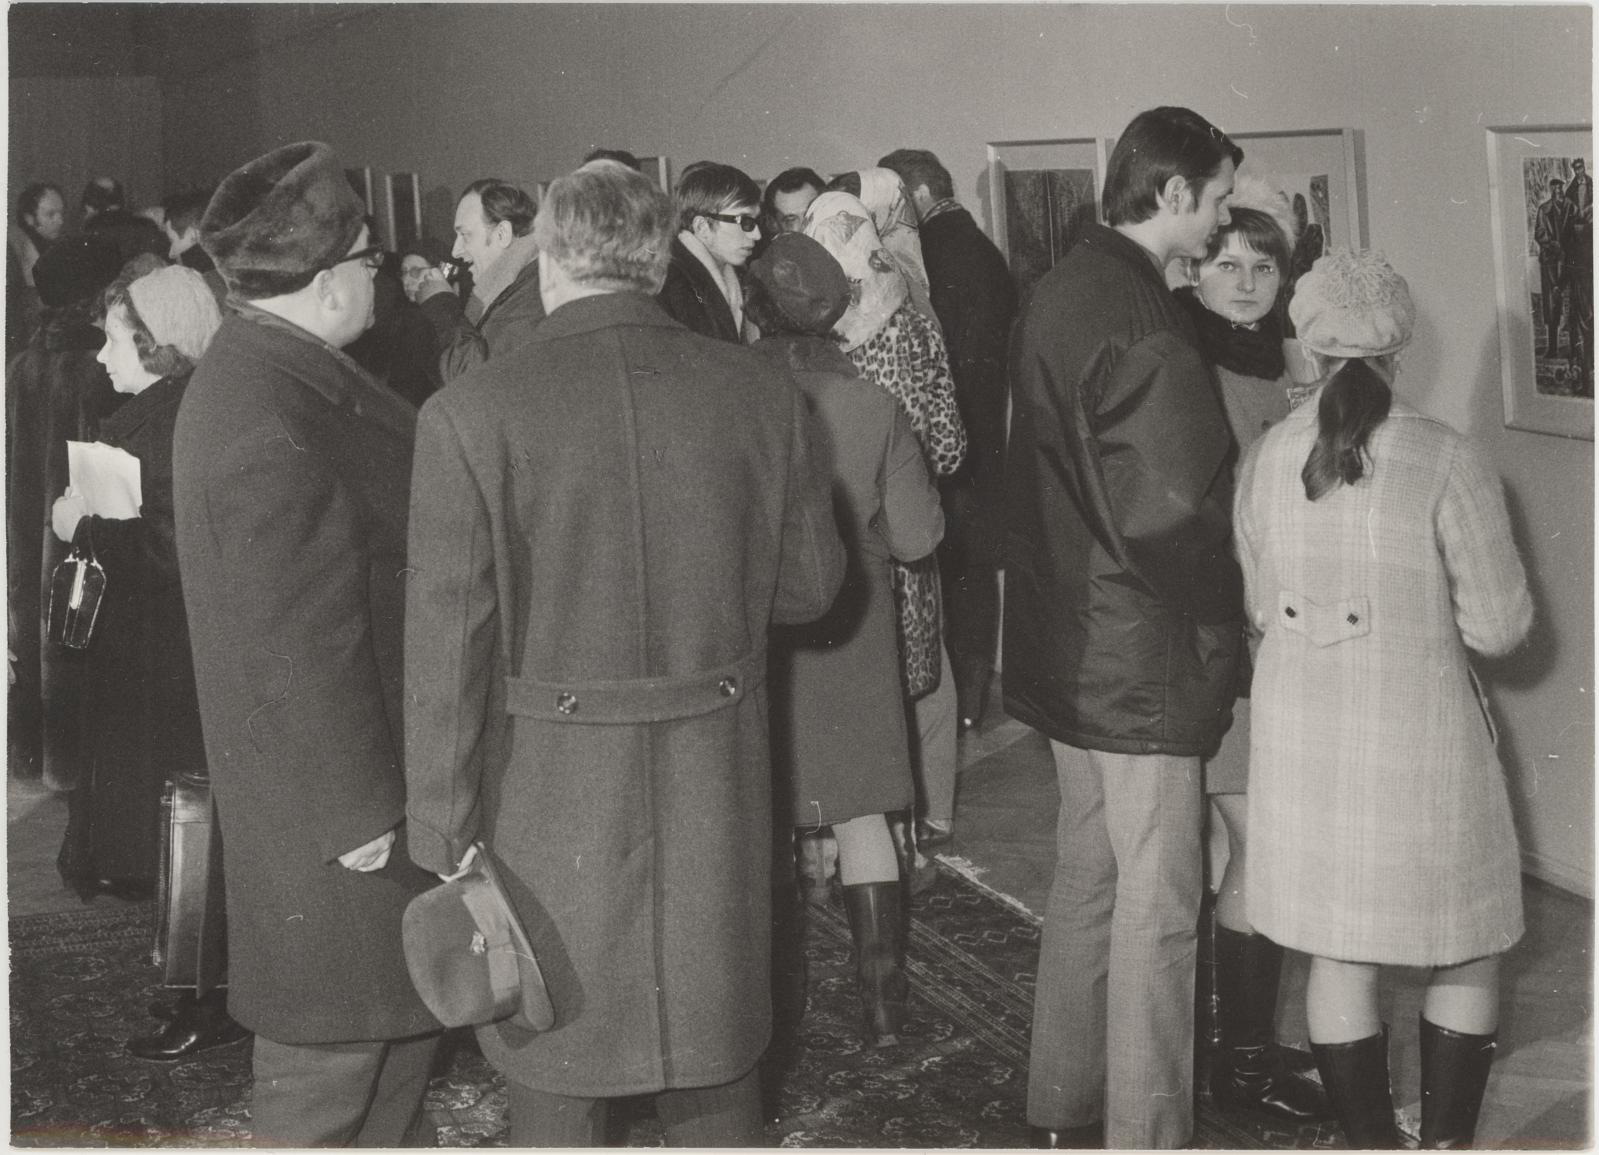 Eesti nõukogude graafika näituse avamine Prahas 8. jaan. 1970. Külalisi näituse avamisel.